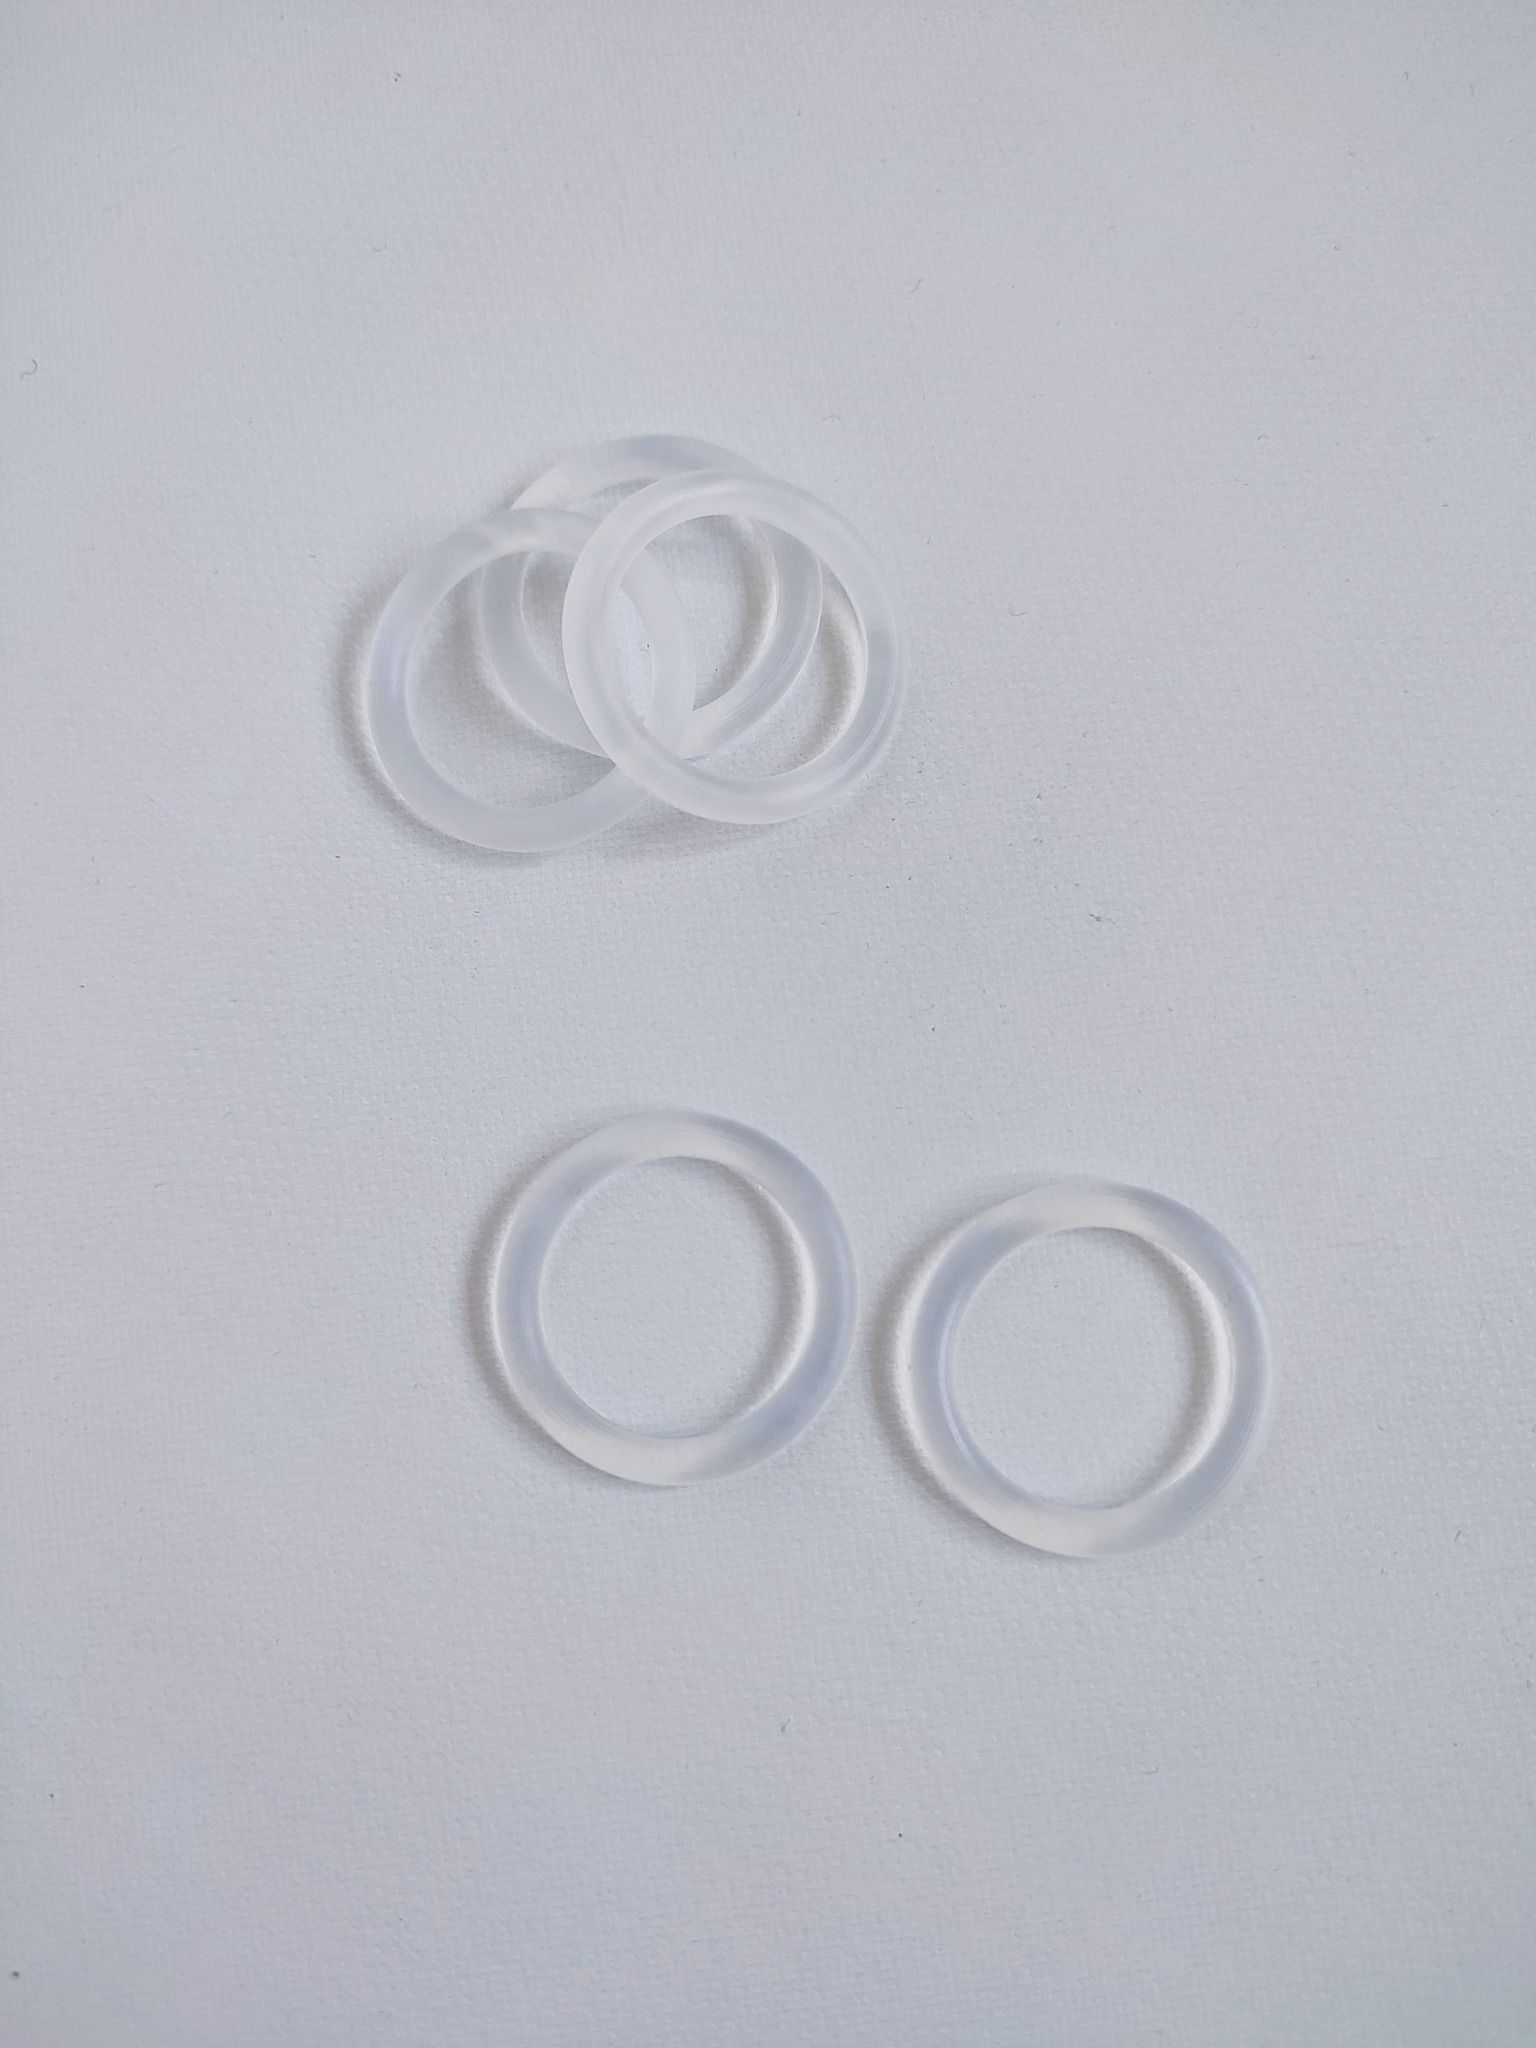 O-ring transparent